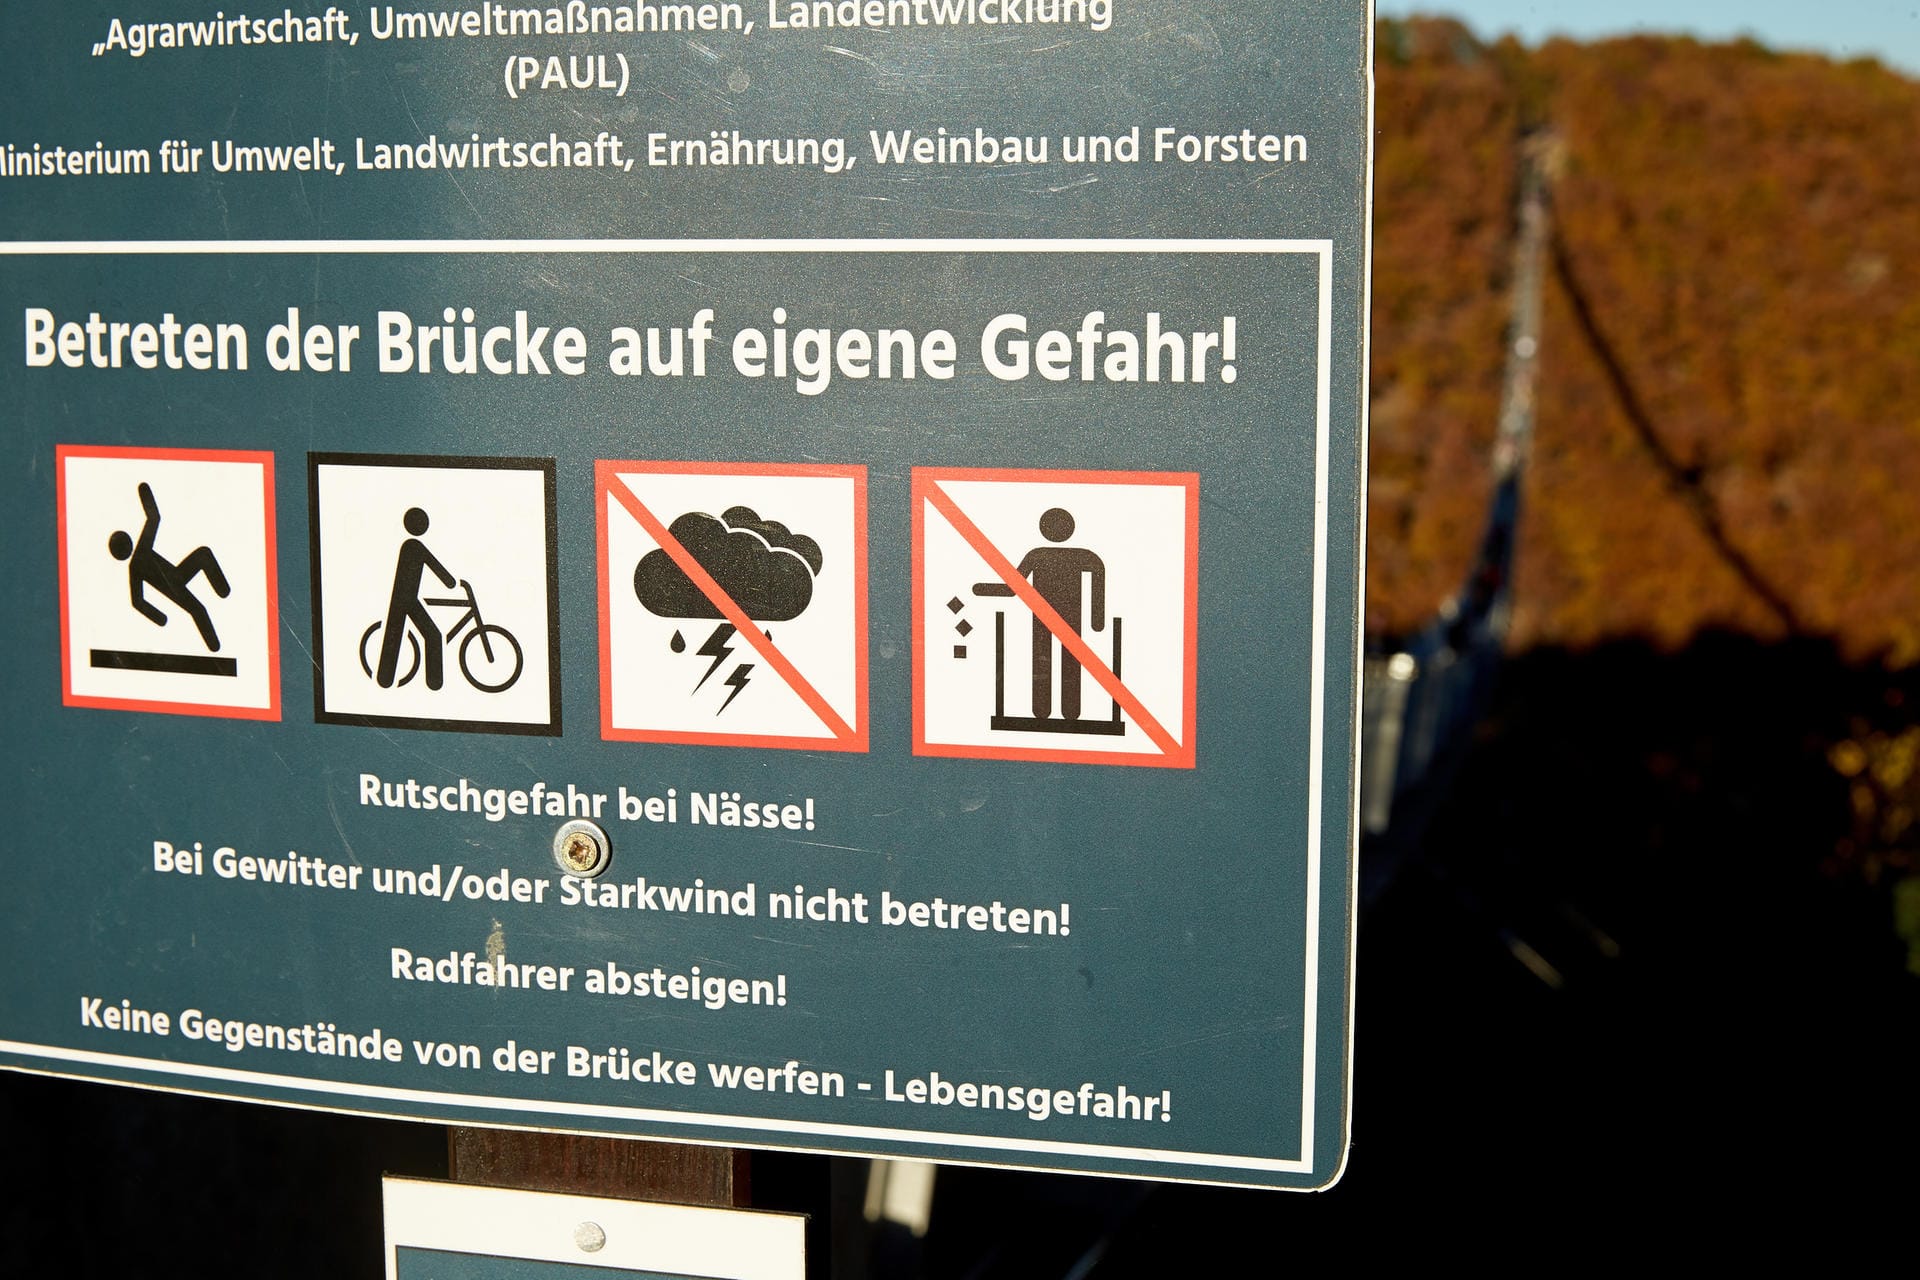 Beim Gang über die Brücke gibt es ein paar Regeln, die Besucher einhalten sollten.